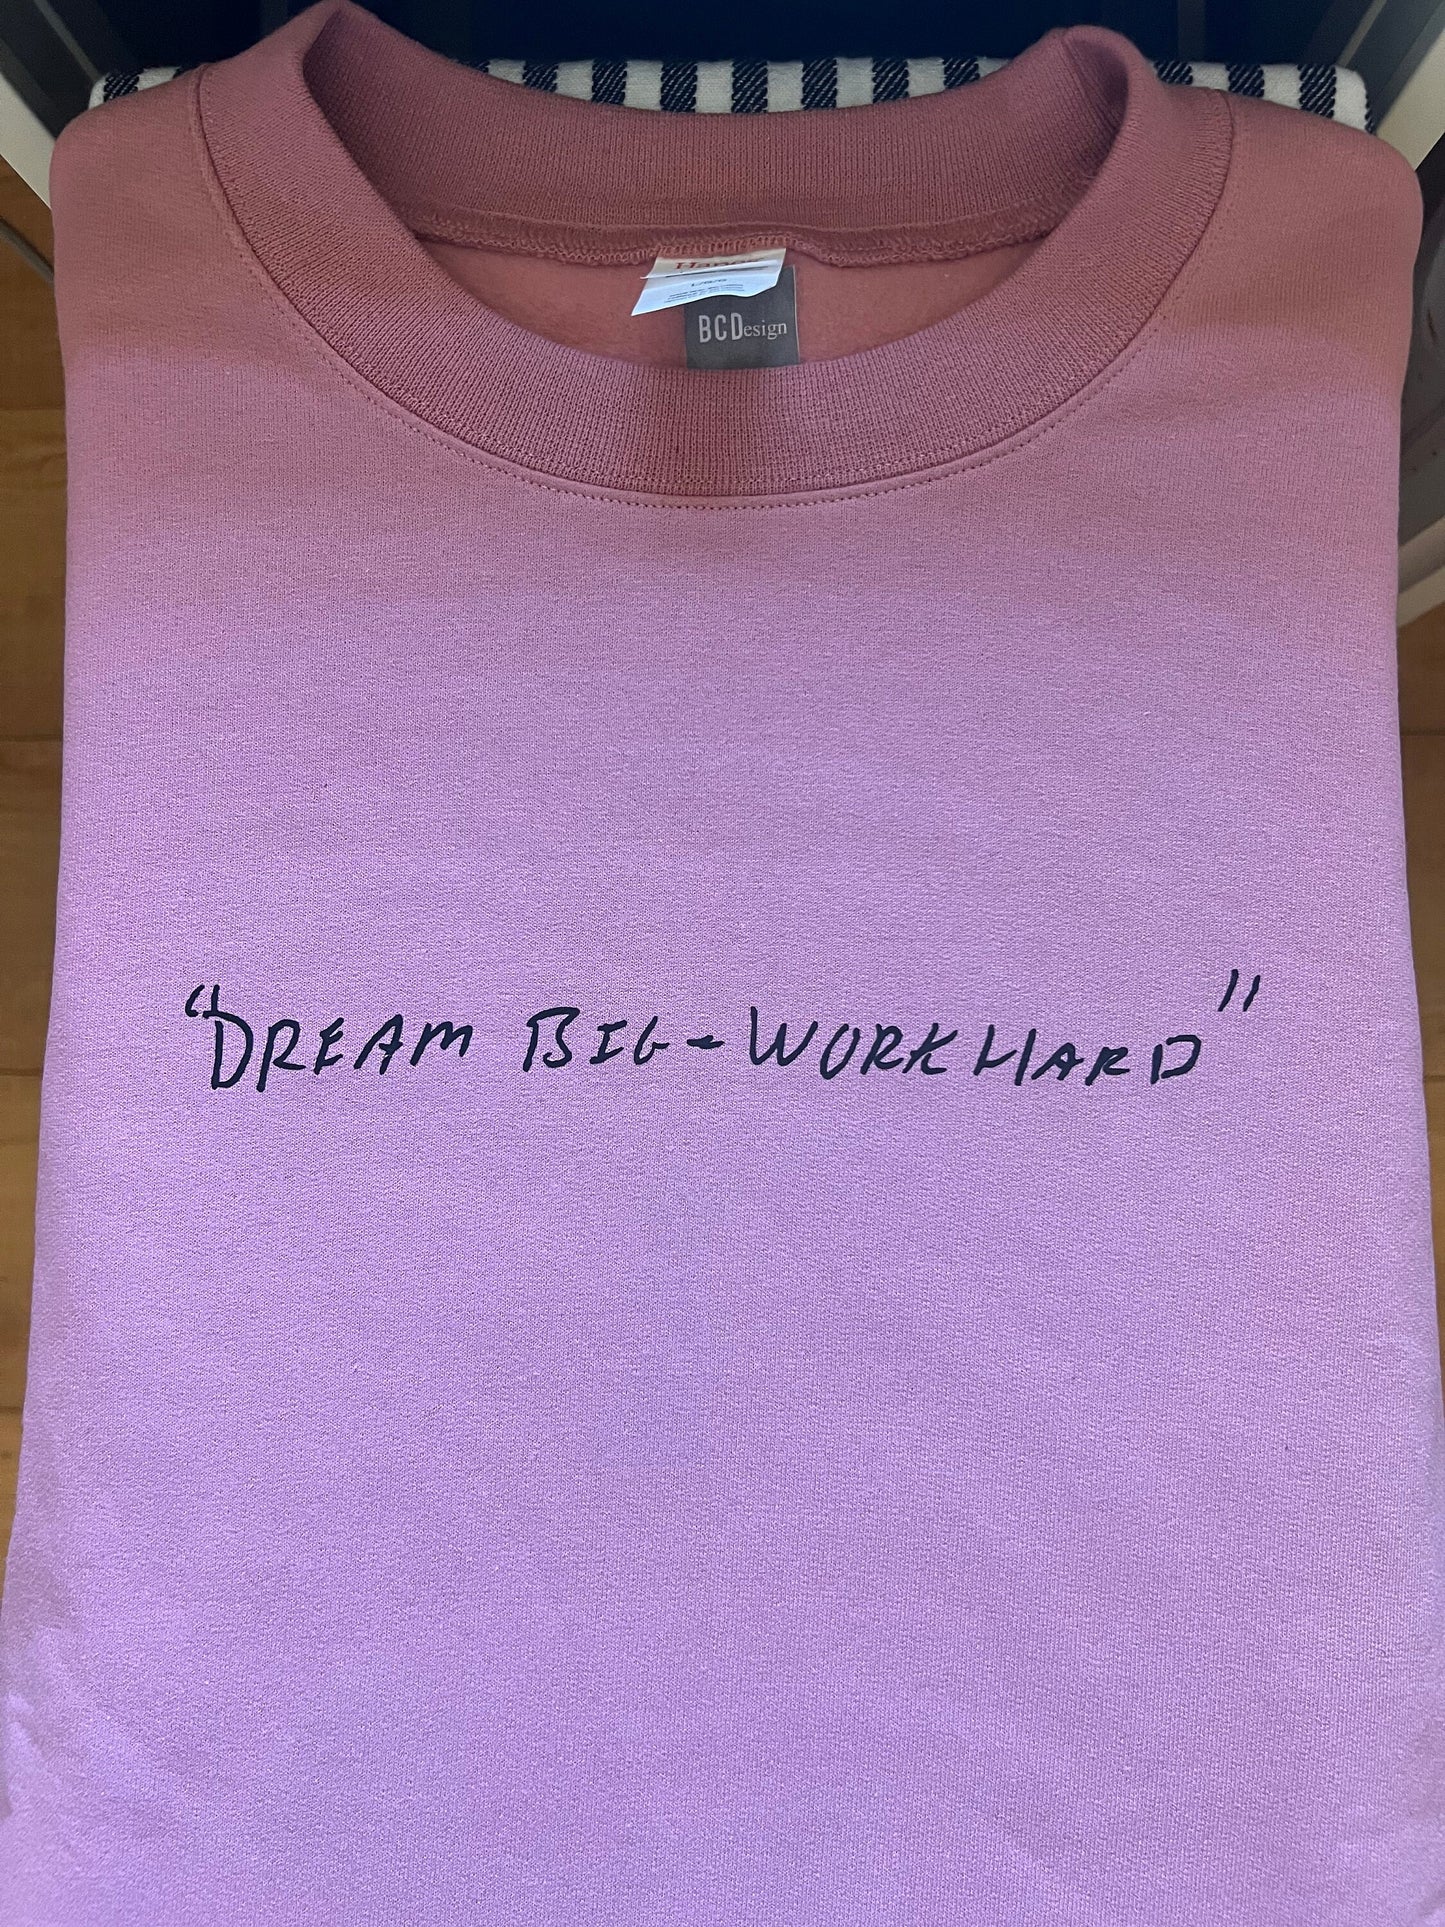 Handwriting Sweatshirt Handwriting Gifts Personalized gifts for her handwriting shirt custom t shirt